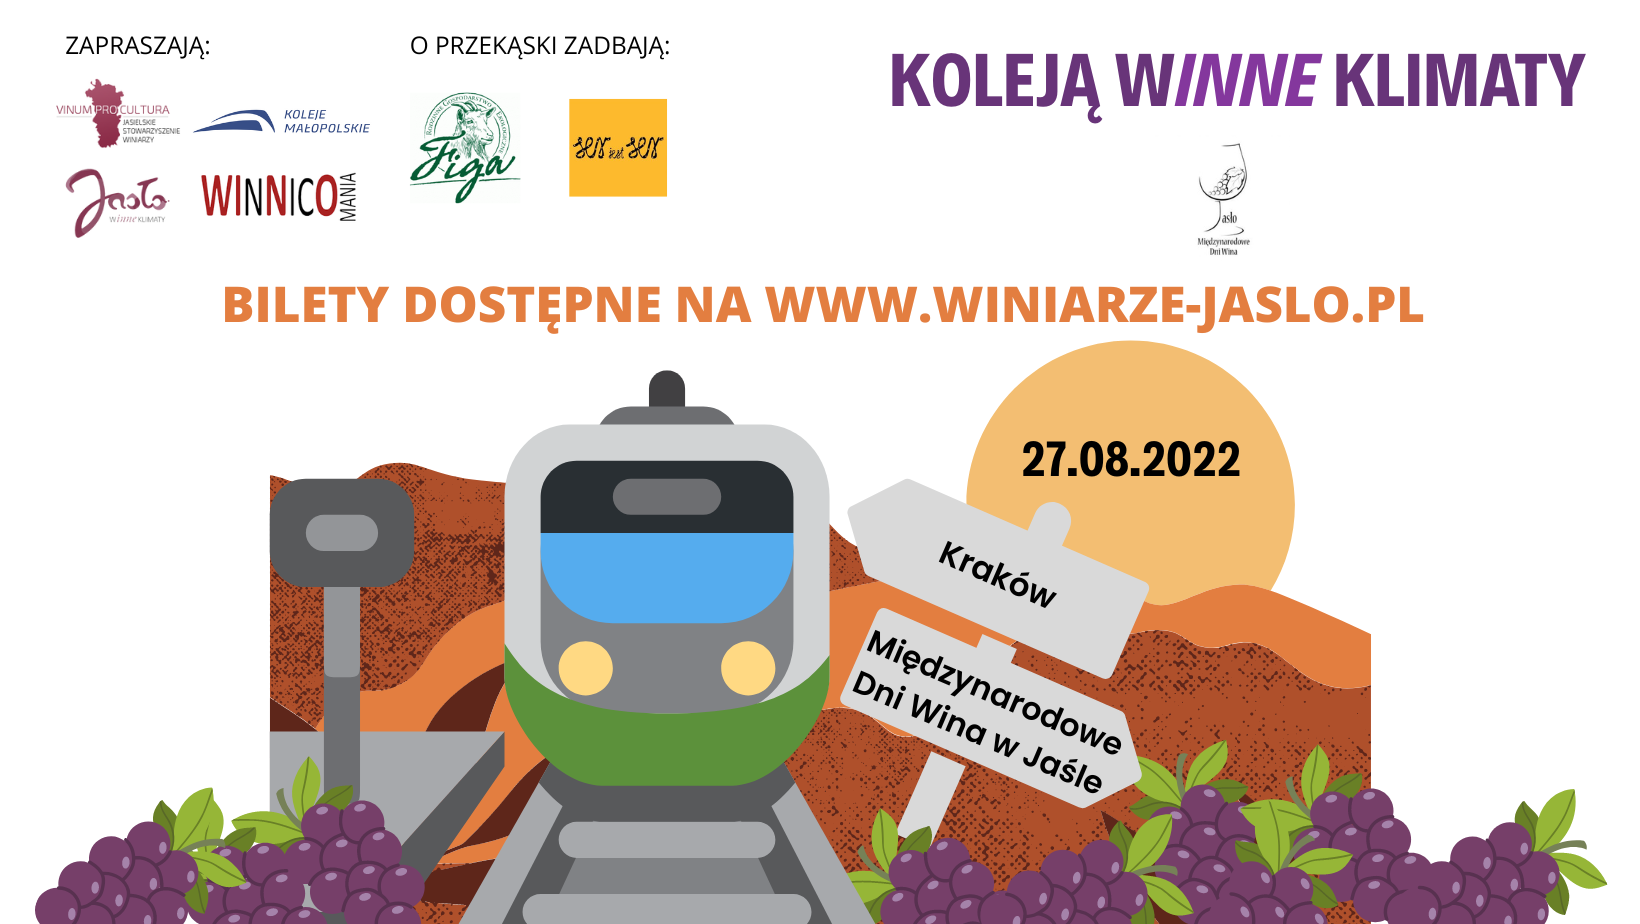 Pociąg Kraków - Międzynarodowe Dni Wina w Jaśle - Kraków "Koleją WInne klimaty"  – główne zdjęcie